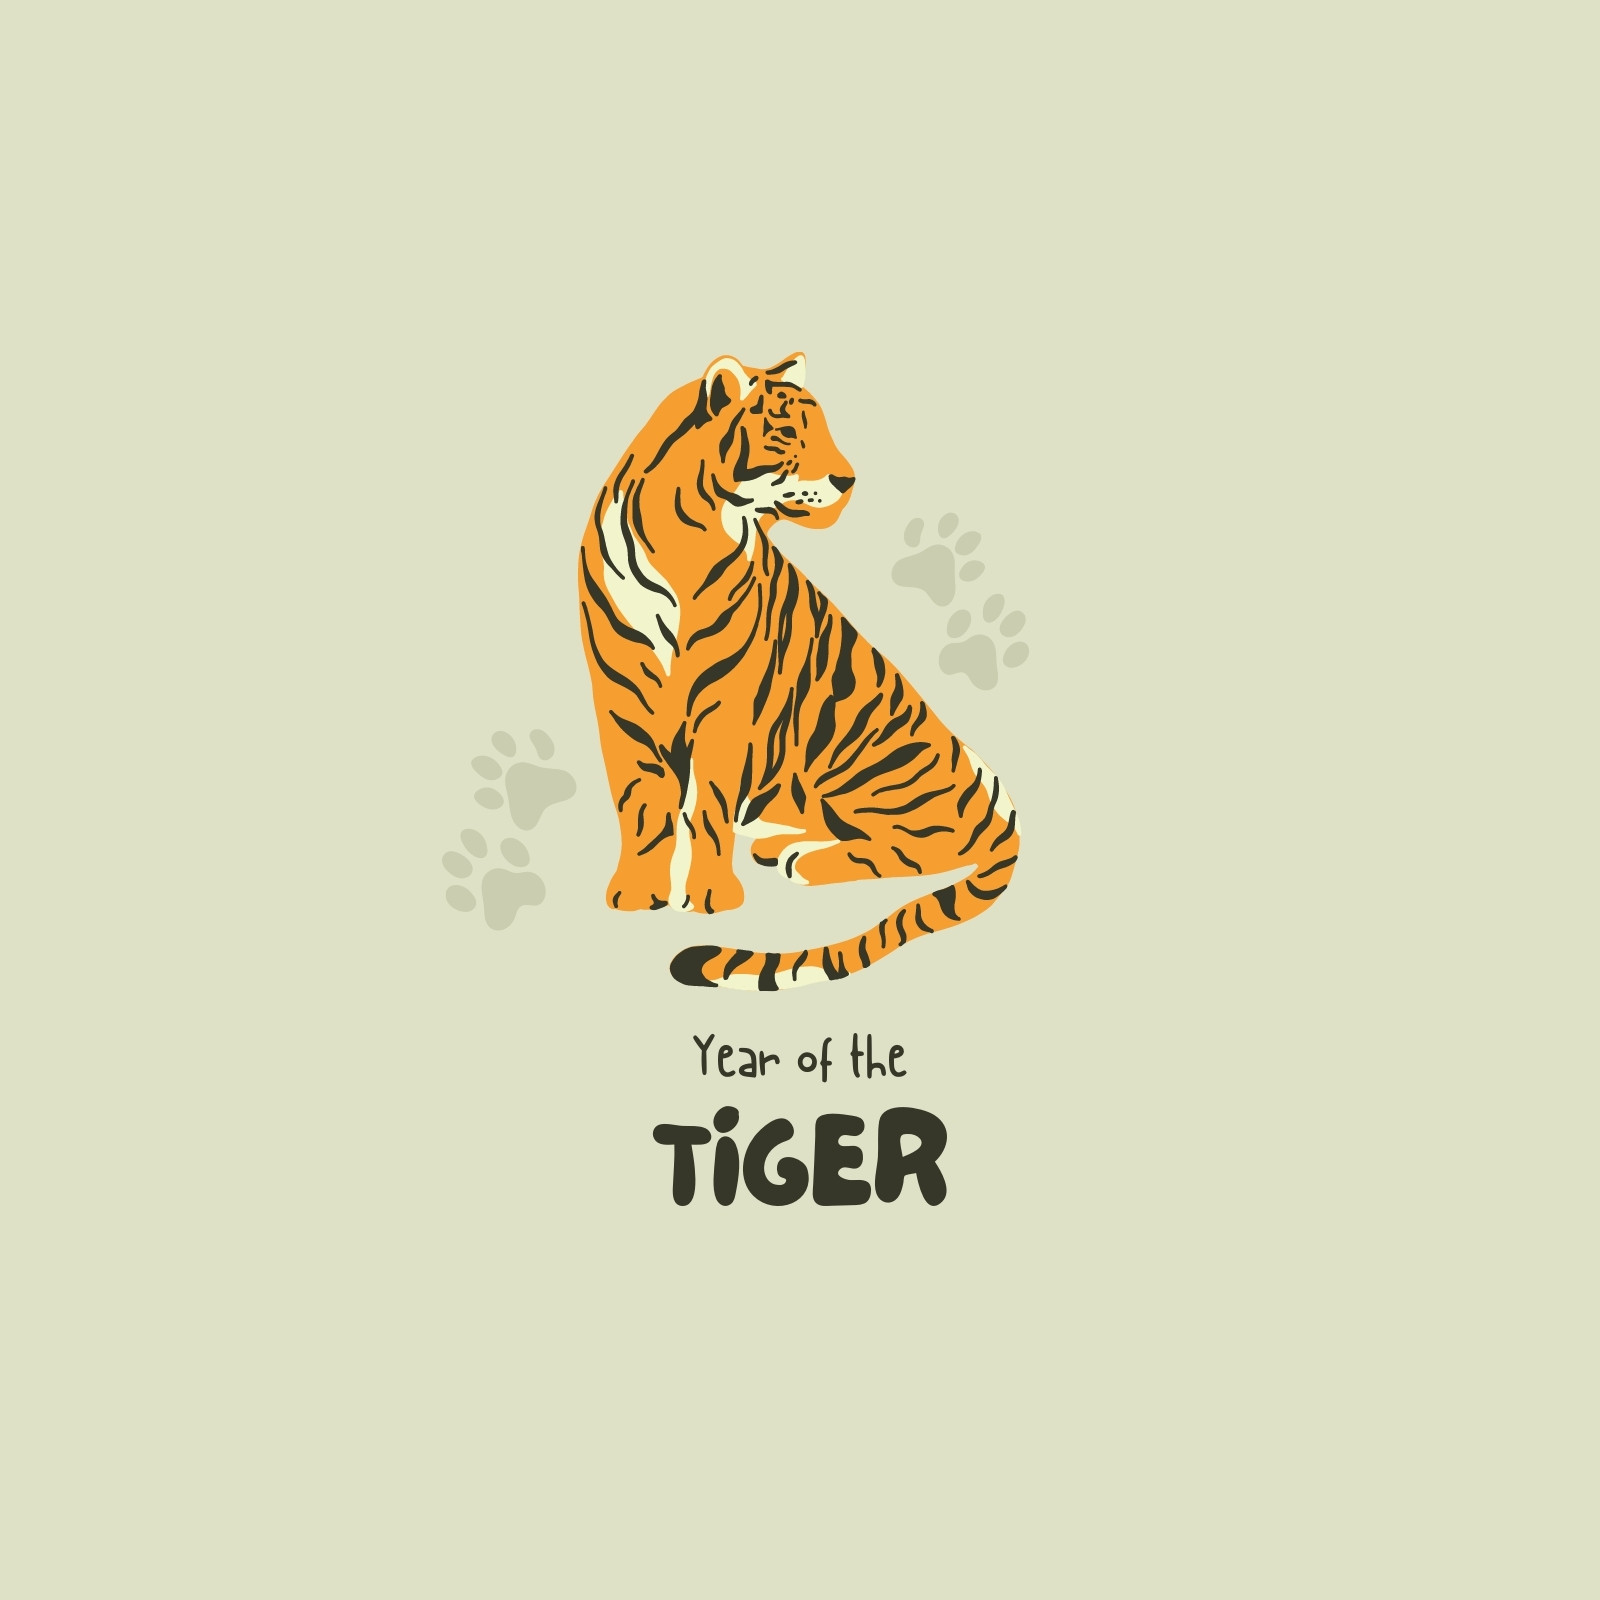 Mascot cute orange white and black tiger